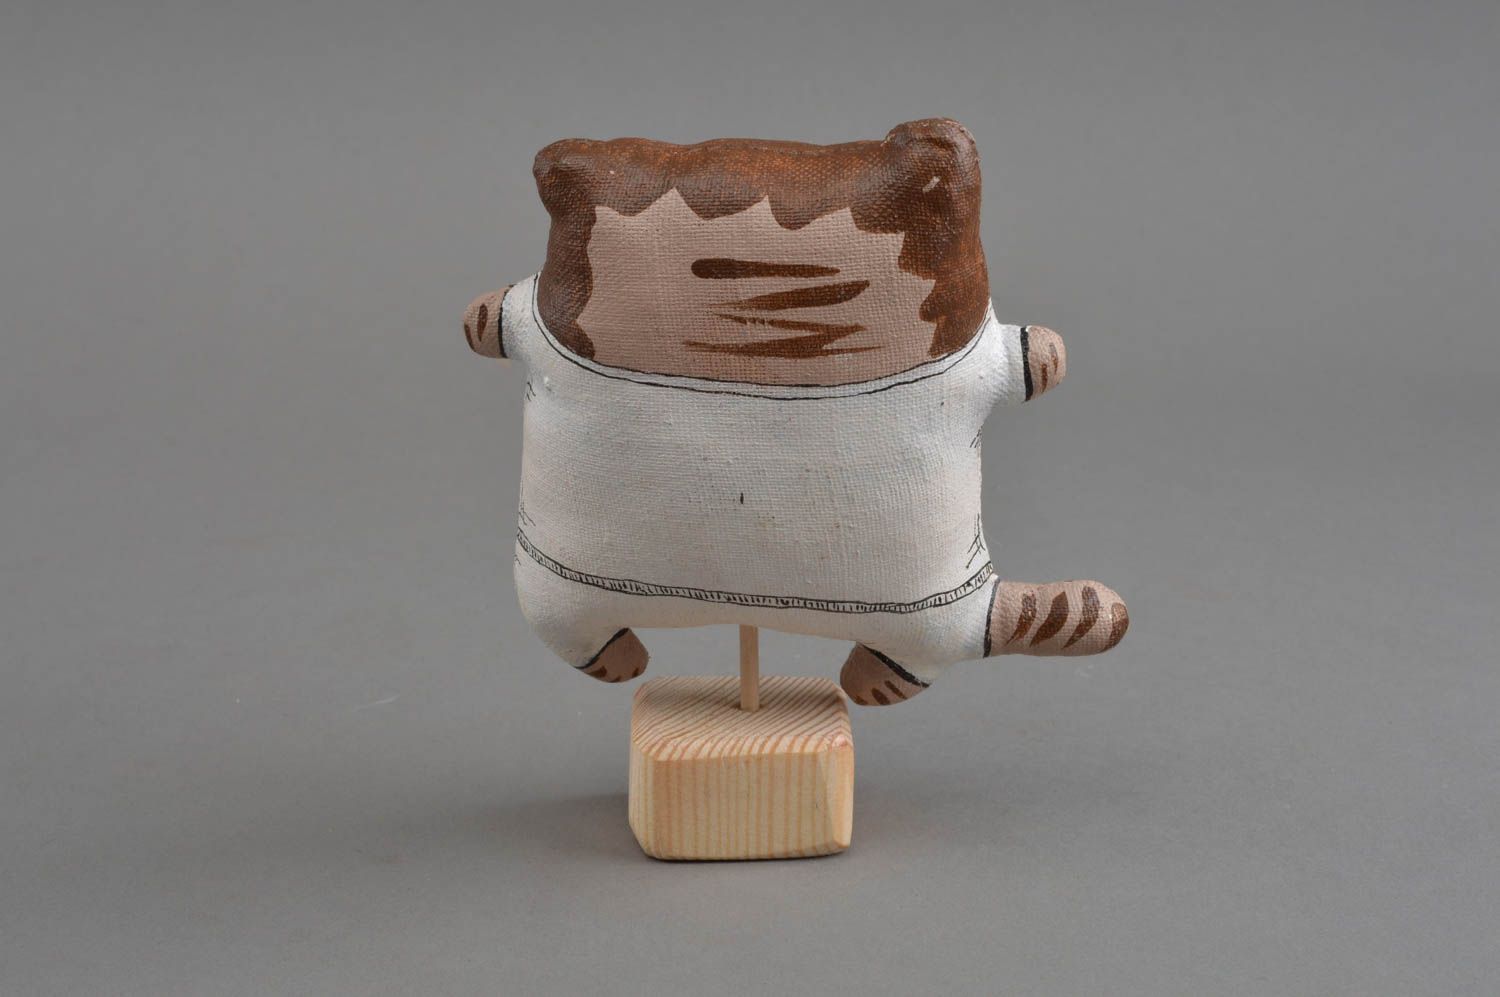 Интерьерная игрушка кот из льна расписной на деревянной подставке ручной работы фото 4